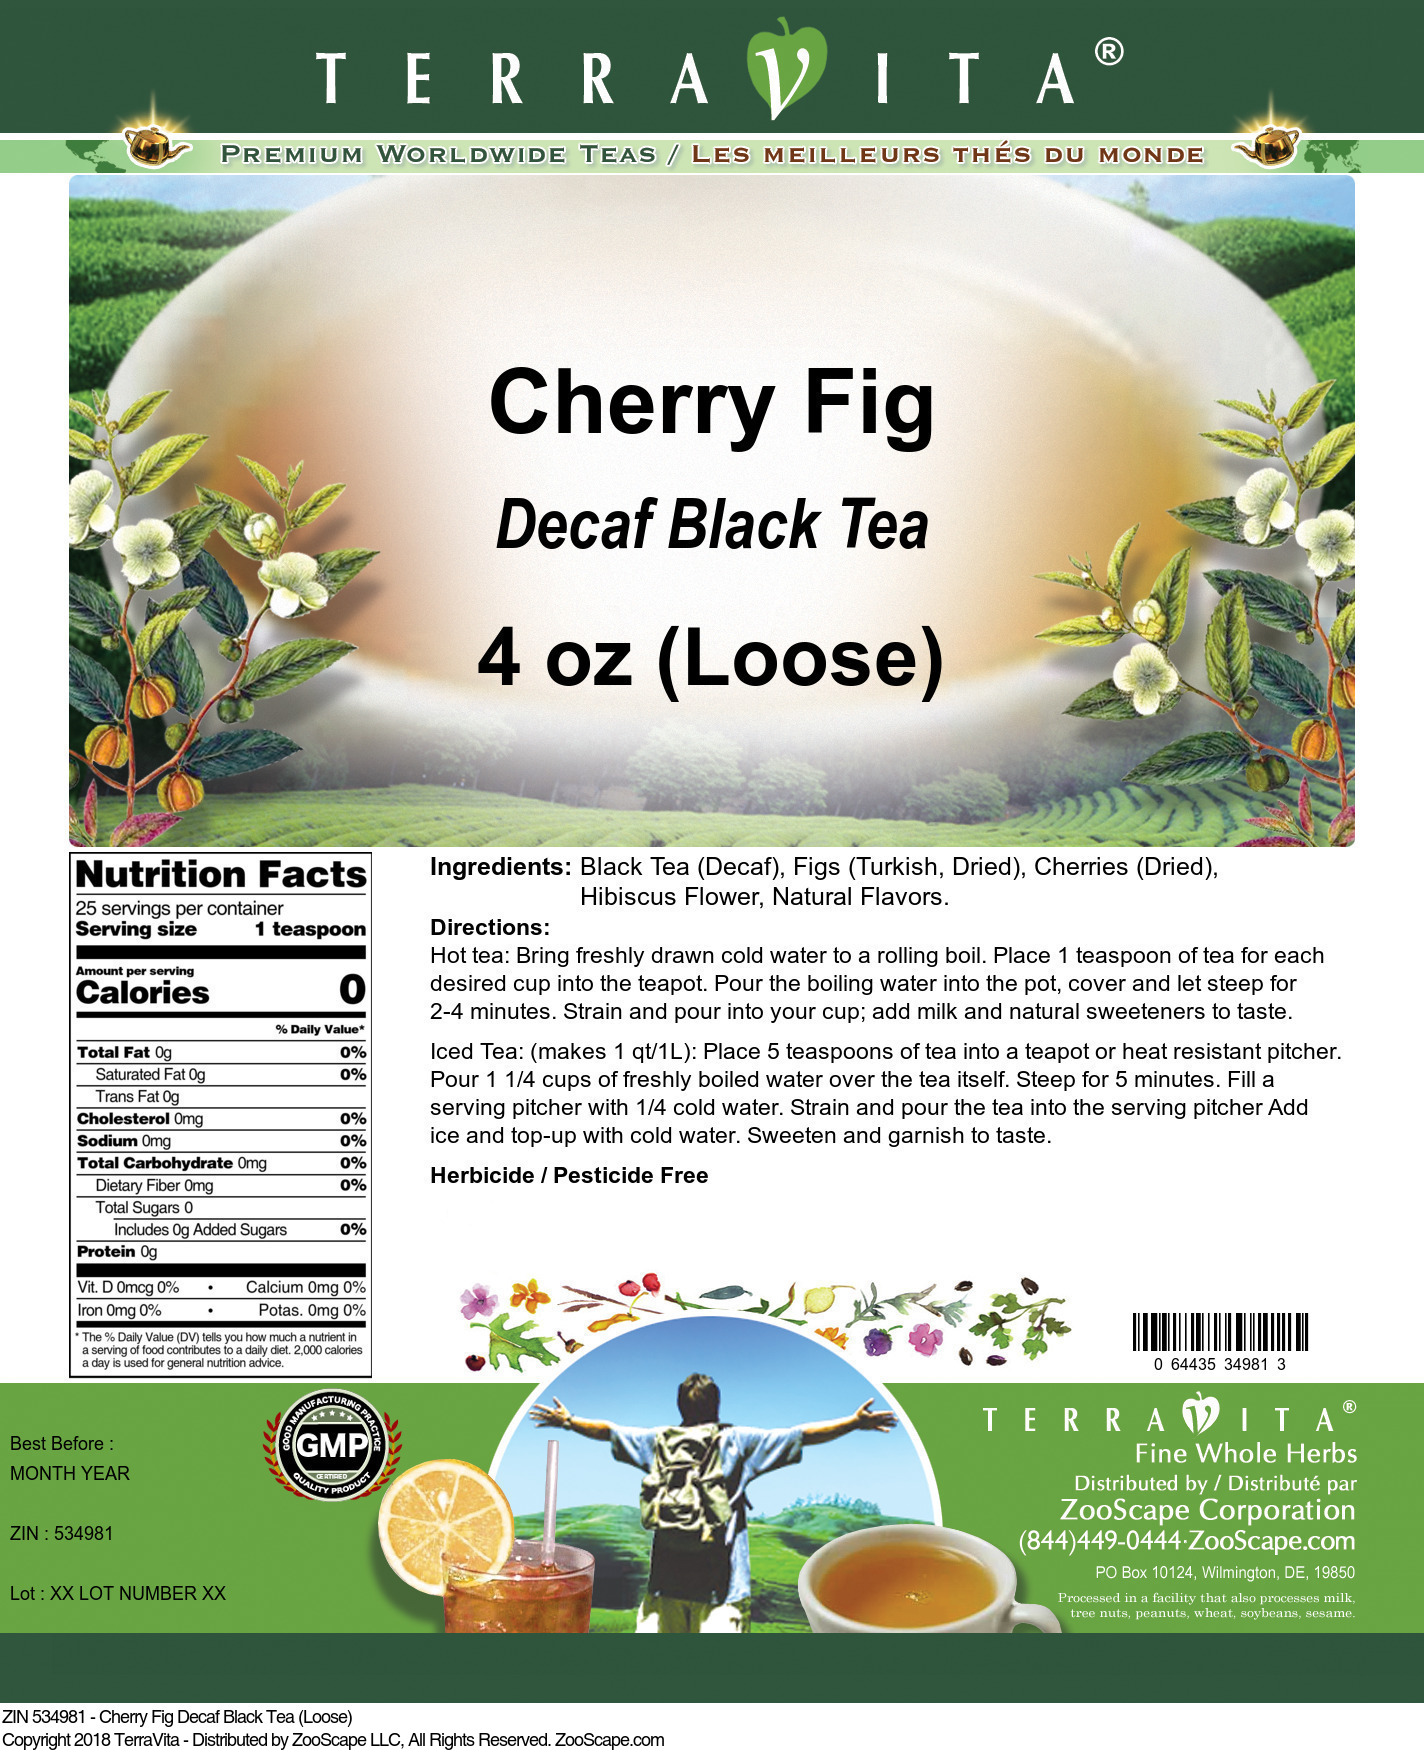 Cherry Fig Decaf Black Tea (Loose) - Label